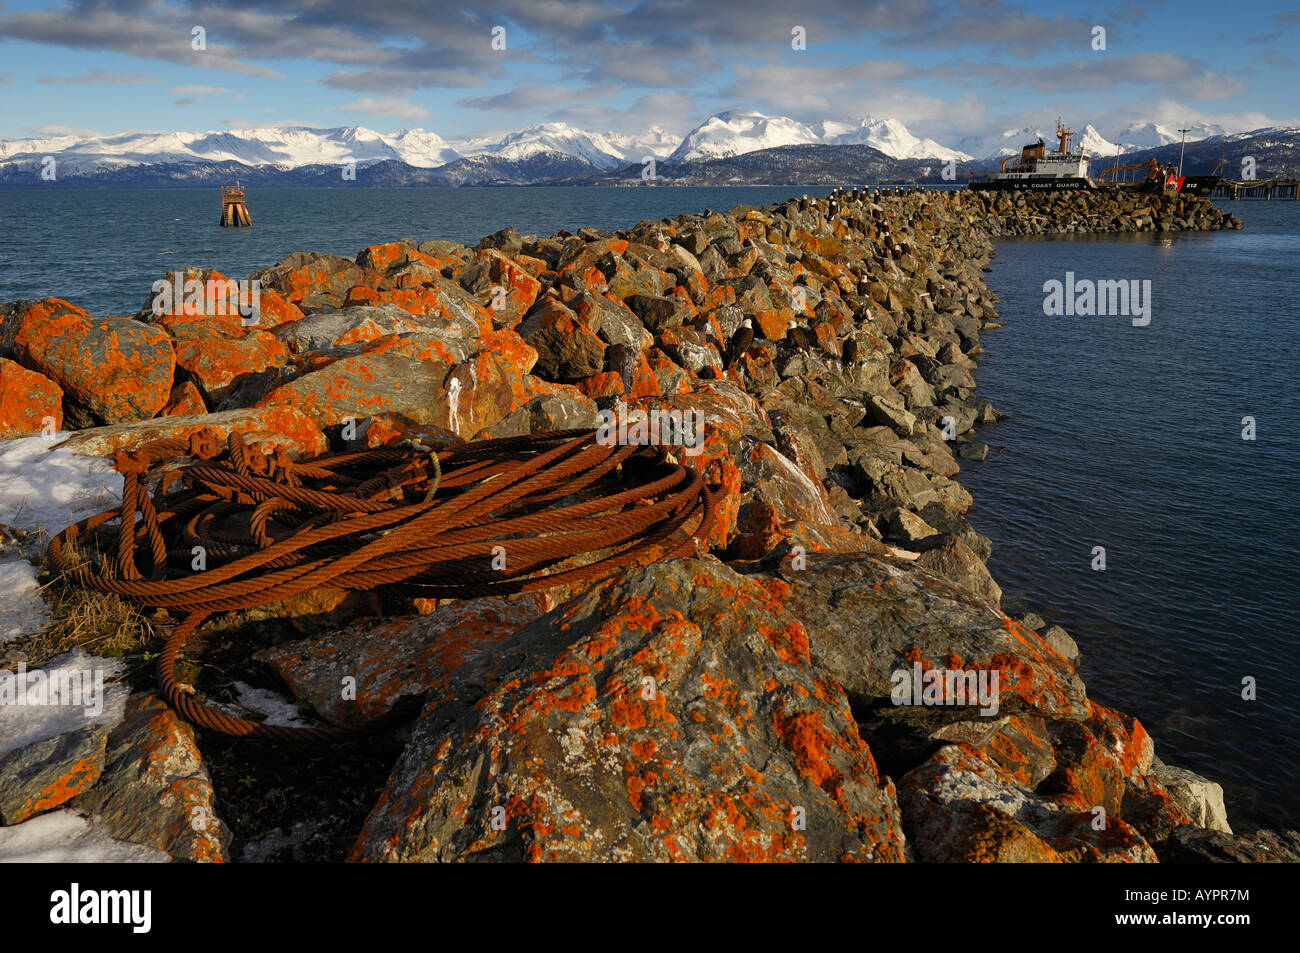 Des roches couvertes de lichen utilisé par blanche comme un débarquement de la perchaude, du port de Homer, Kenai Peninsula, Alaska, USA Banque D'Images